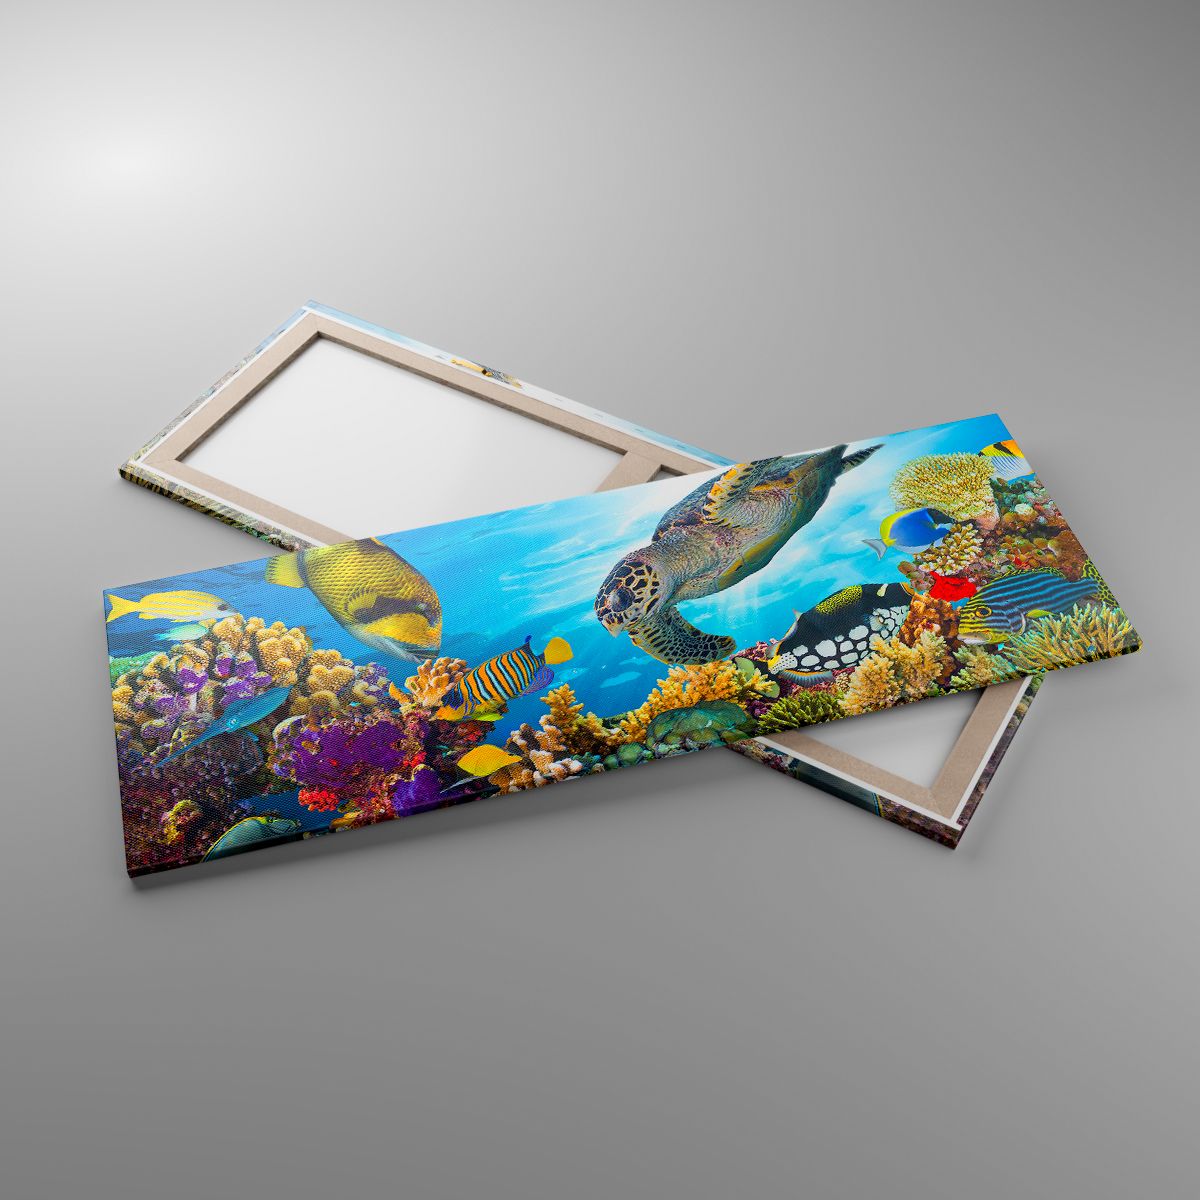 Obrazy Rafa Koralowa, Obrazy Morze, Obrazy Podwodny Świat, Obrazy Żółw, Obrazy Ryby